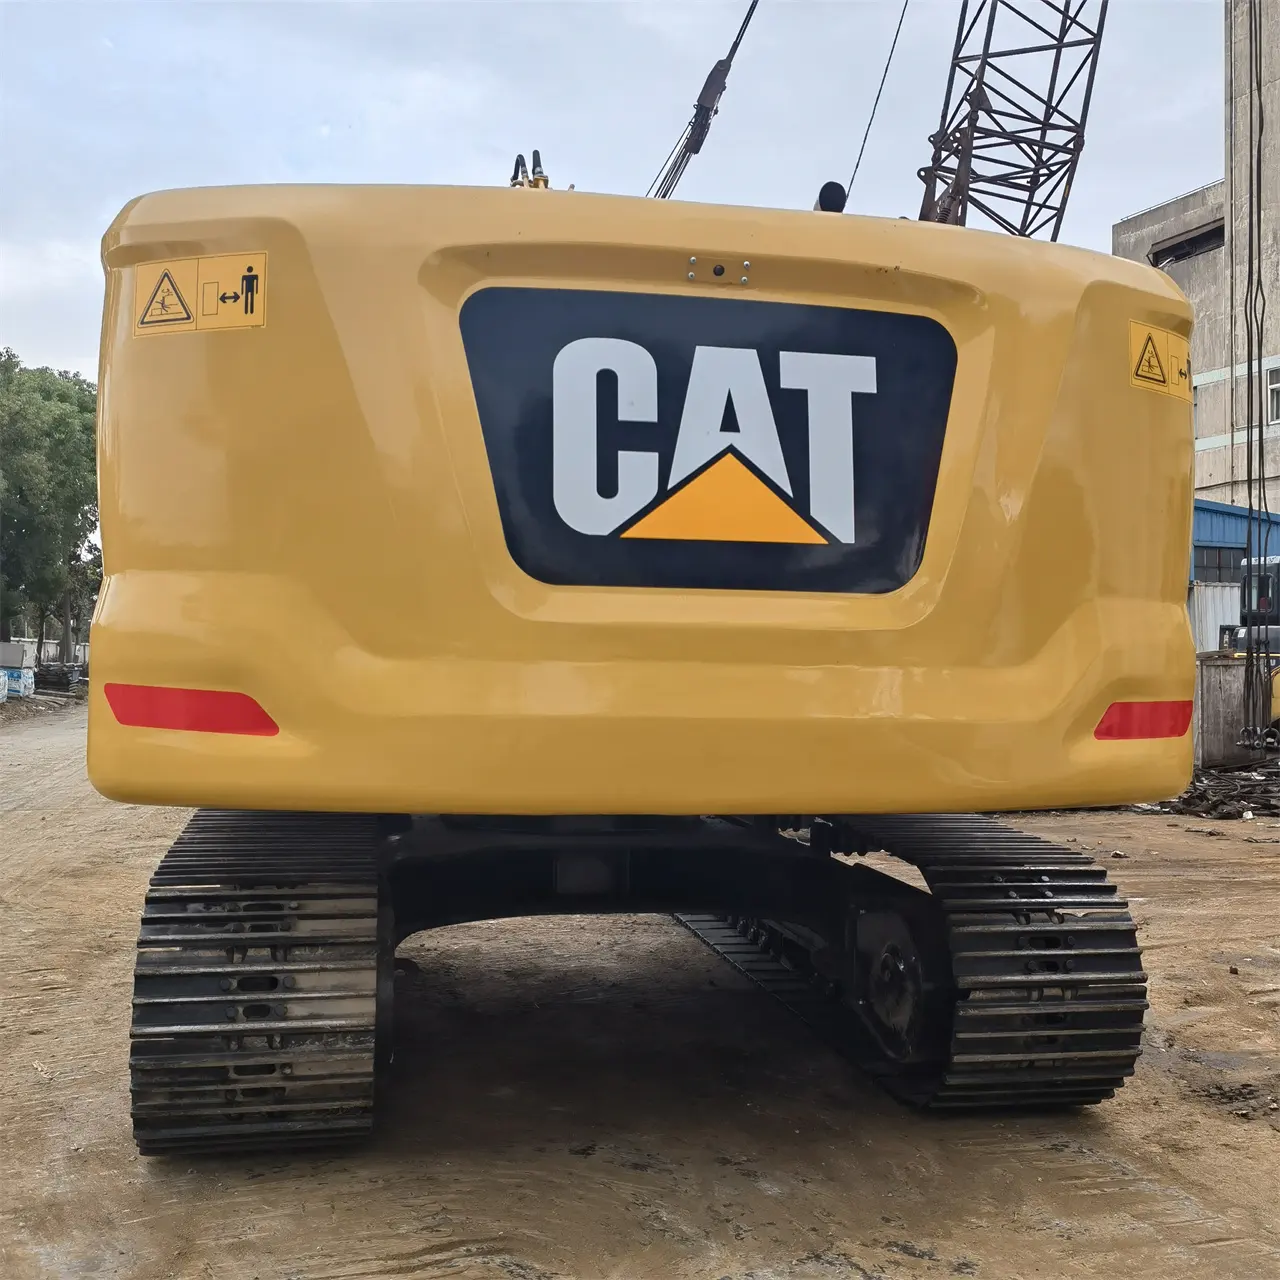 Caterpillar Bagger gebraucht CAT 320 320D 320GC 320E 20 Tonnen Hydraulikraupe gebrauchter Bagger Bagger für Bauingenieurbau